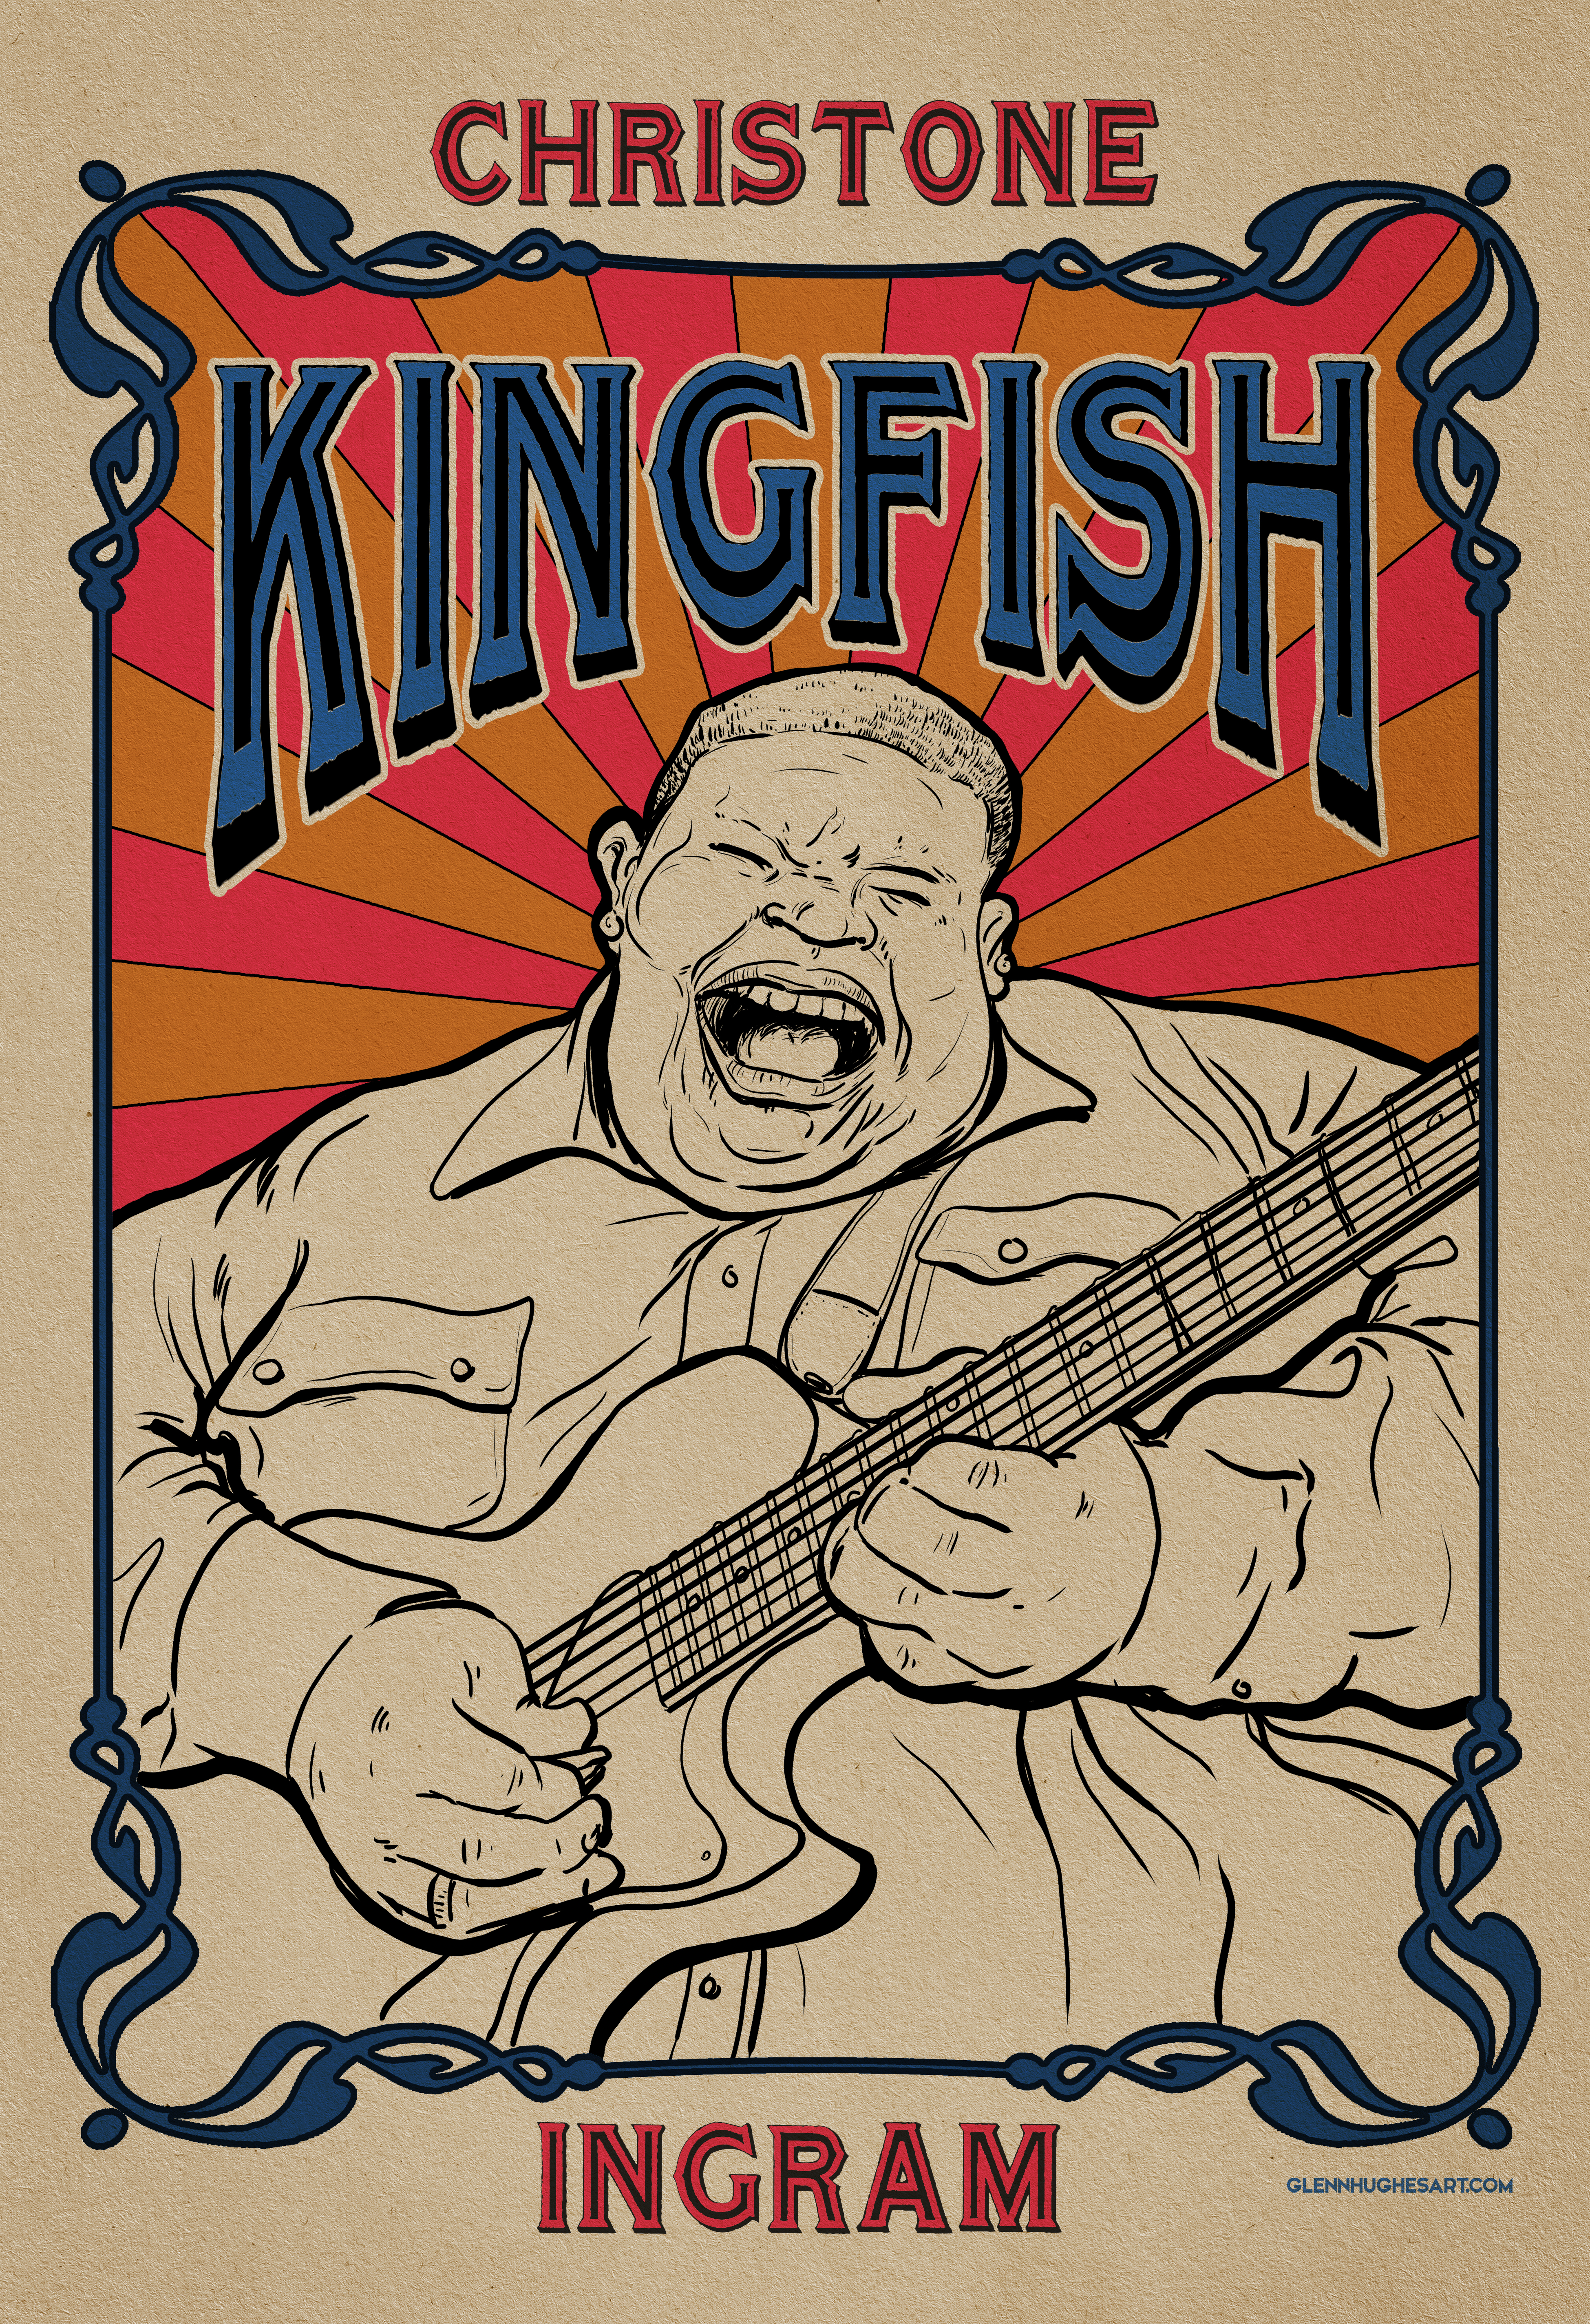 Christone 'Kingfish' Ingram